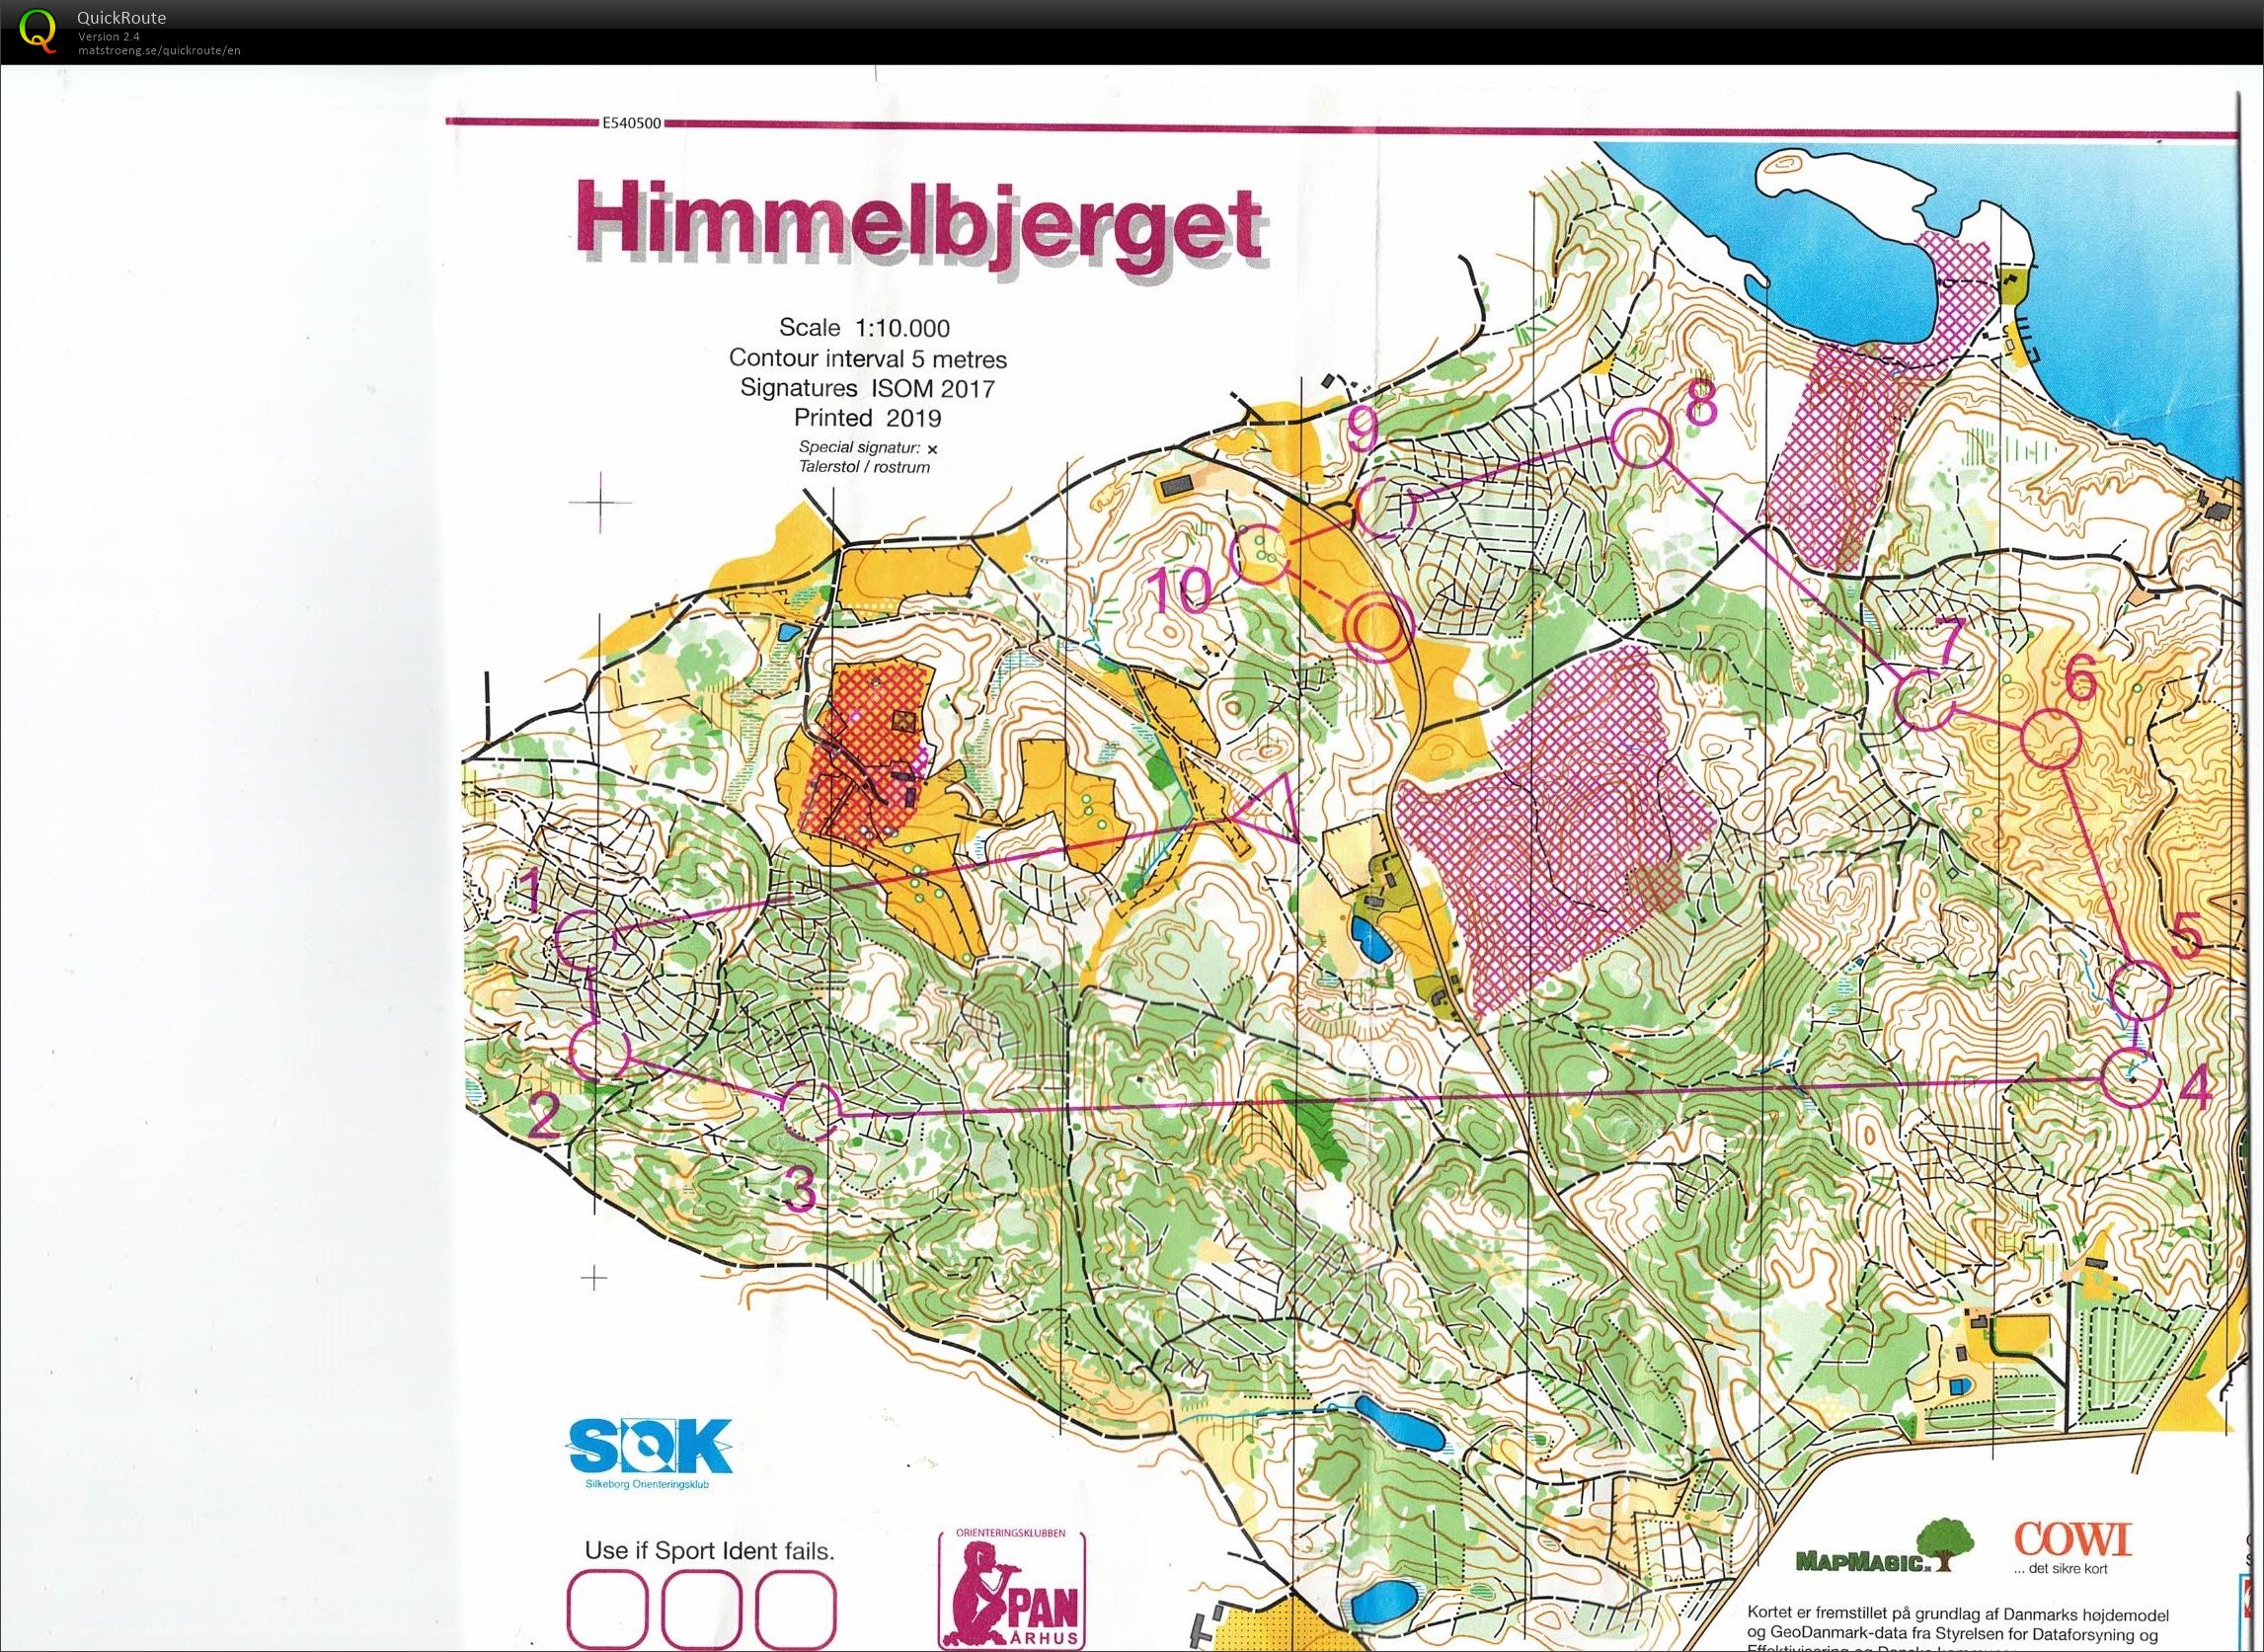 Himmelbjerget, JWOC testløb, Bane Åben 4, Pia Gade, 090619 (09/06/2019)